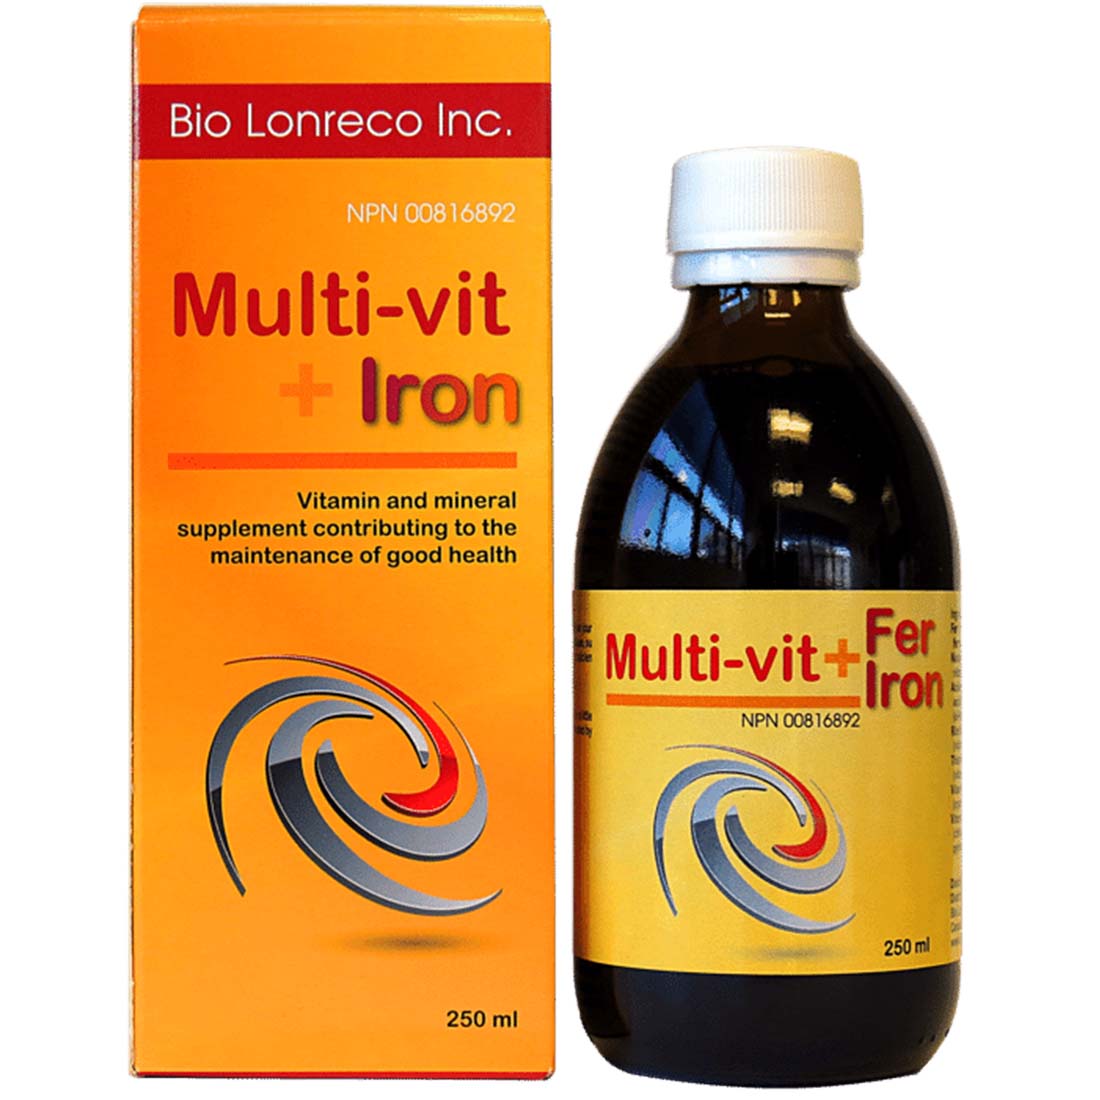 Bio Lonreco Multi-vit plus Iron,  Liquid Multivitamin with Iron